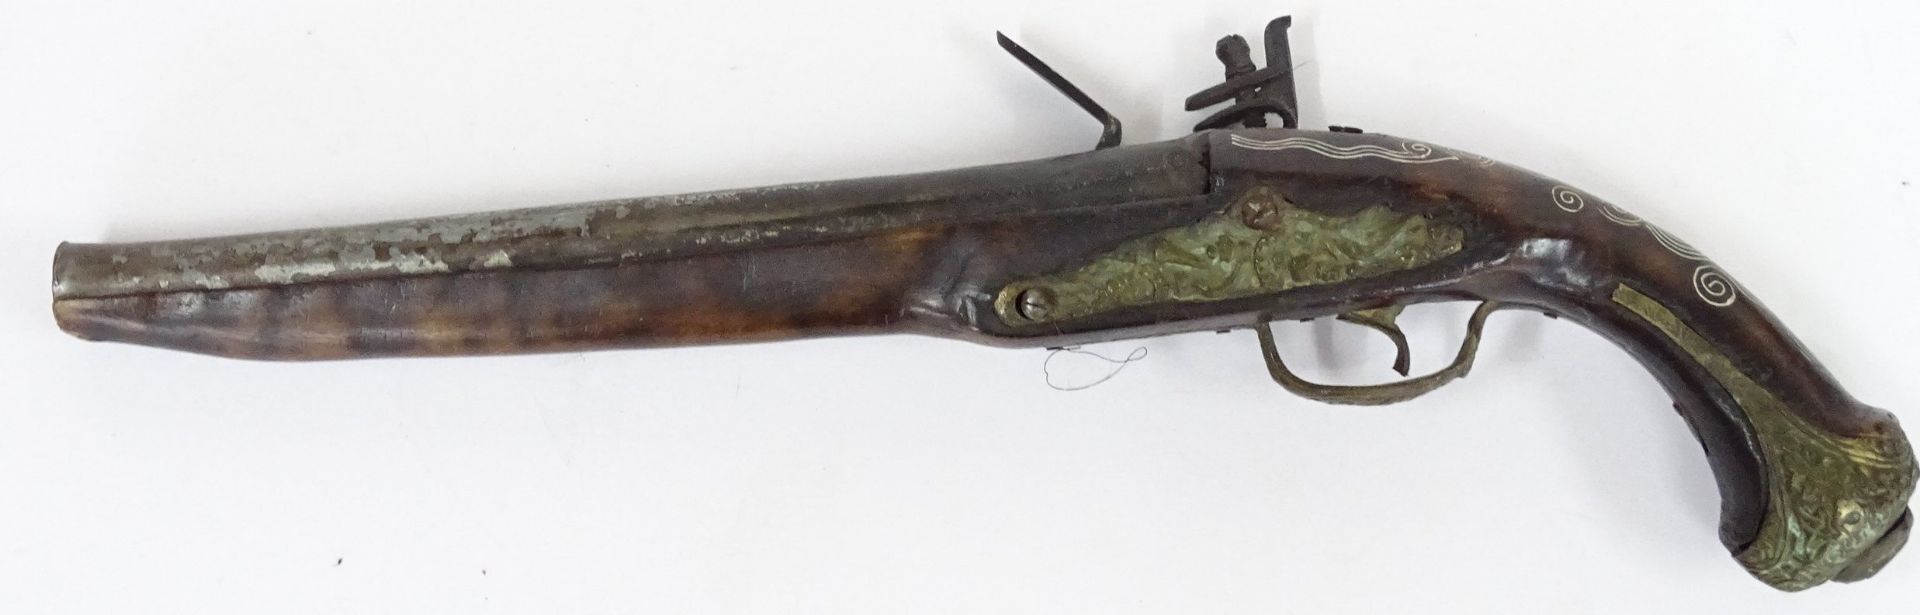 Steinschlloss-Pistole, wohl Deko. L-44 cm - Bild 5 aus 8